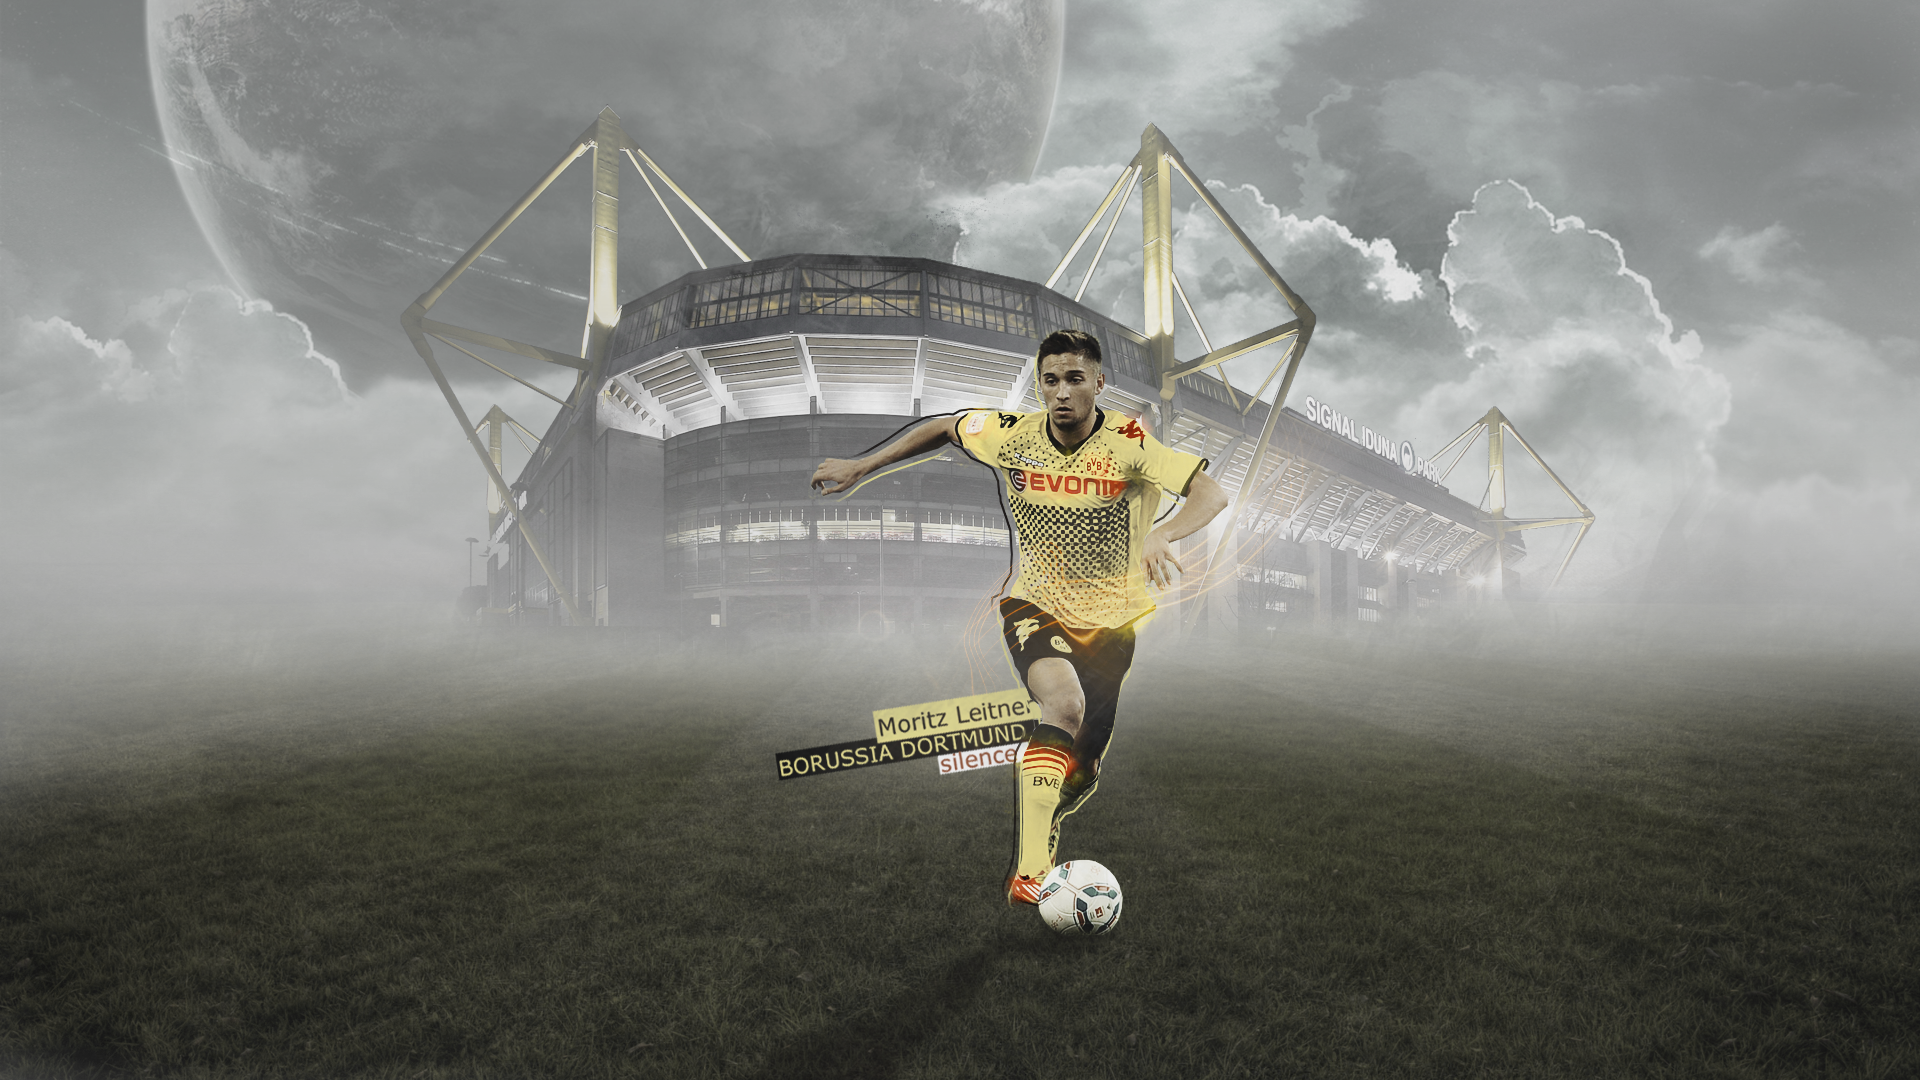 Moritz Leitner, Borussia Dortmund - Signal Iduna Park Bei Nacht , HD Wallpaper & Backgrounds